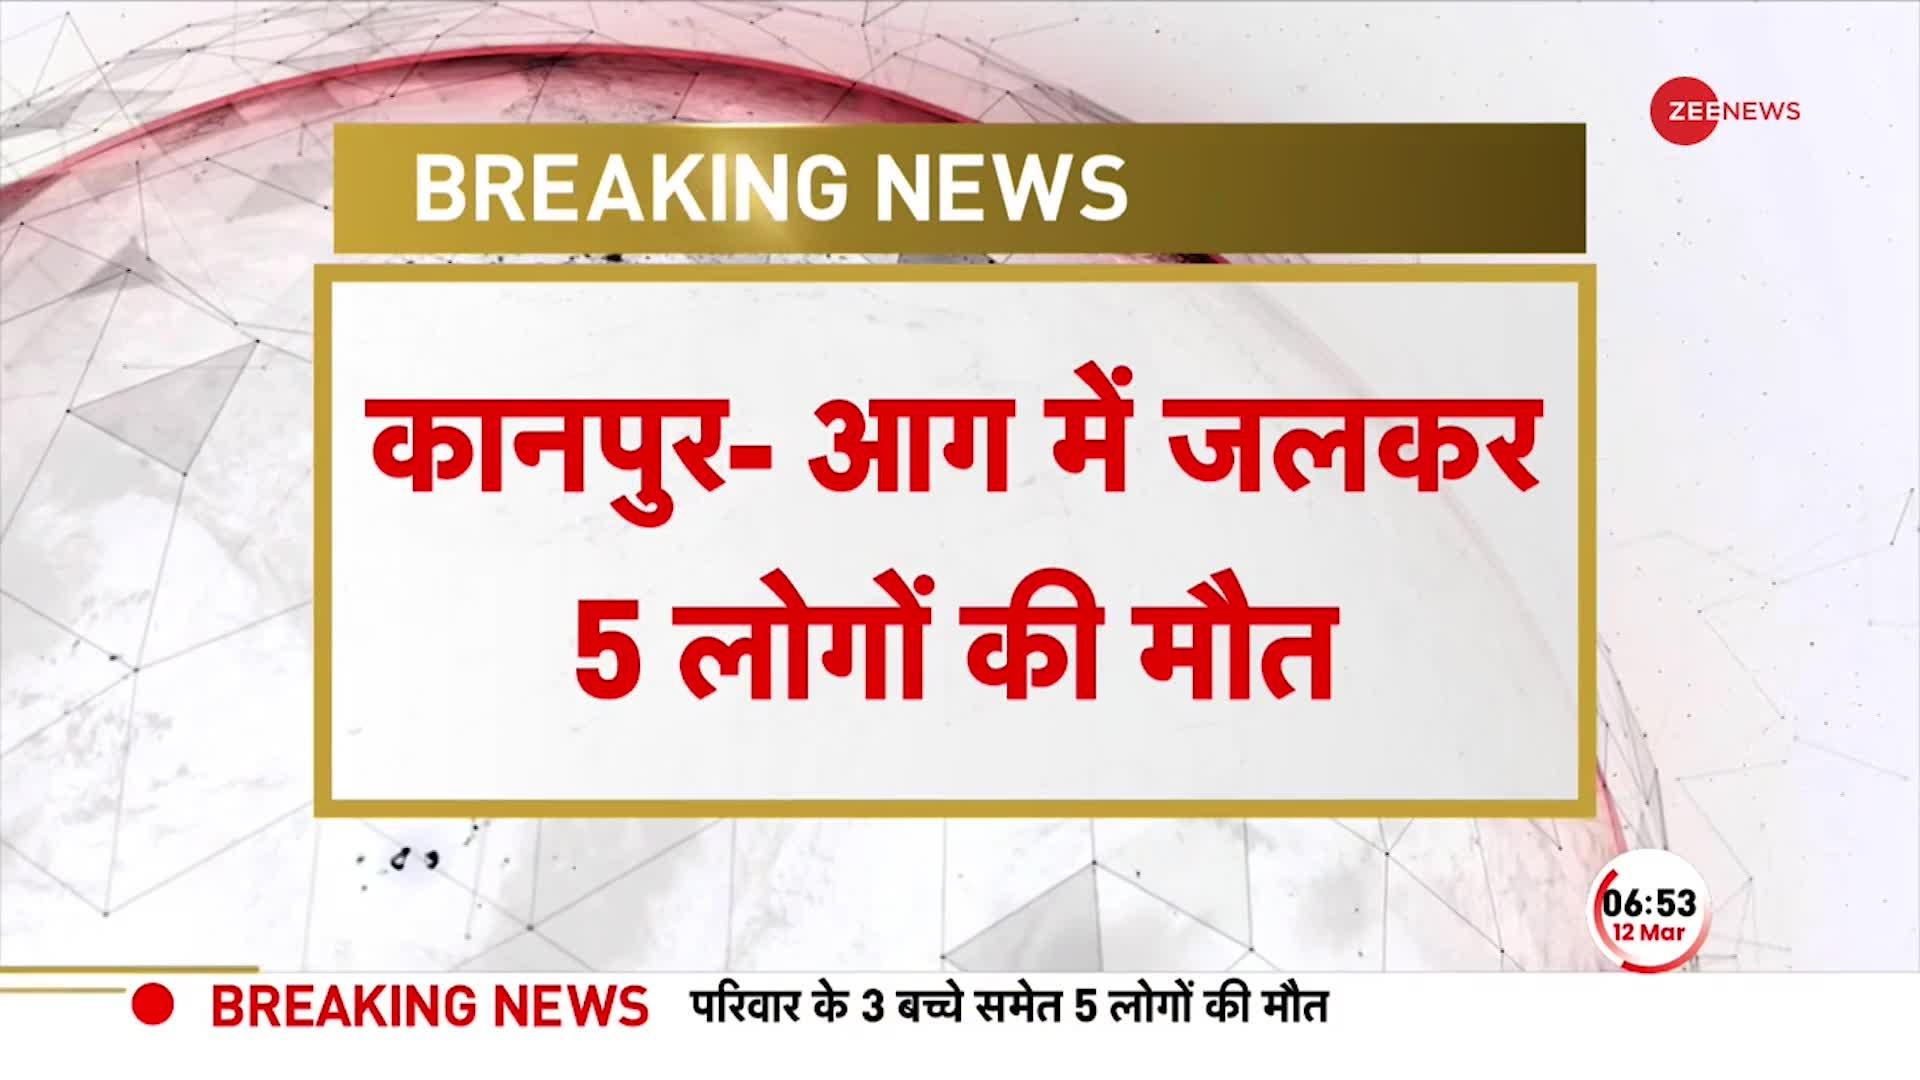 Breaking News: कानपुर में दर्दनाक हादसा, आग लगने से पति-पत्नी समेत 3 बच्चों की मौत